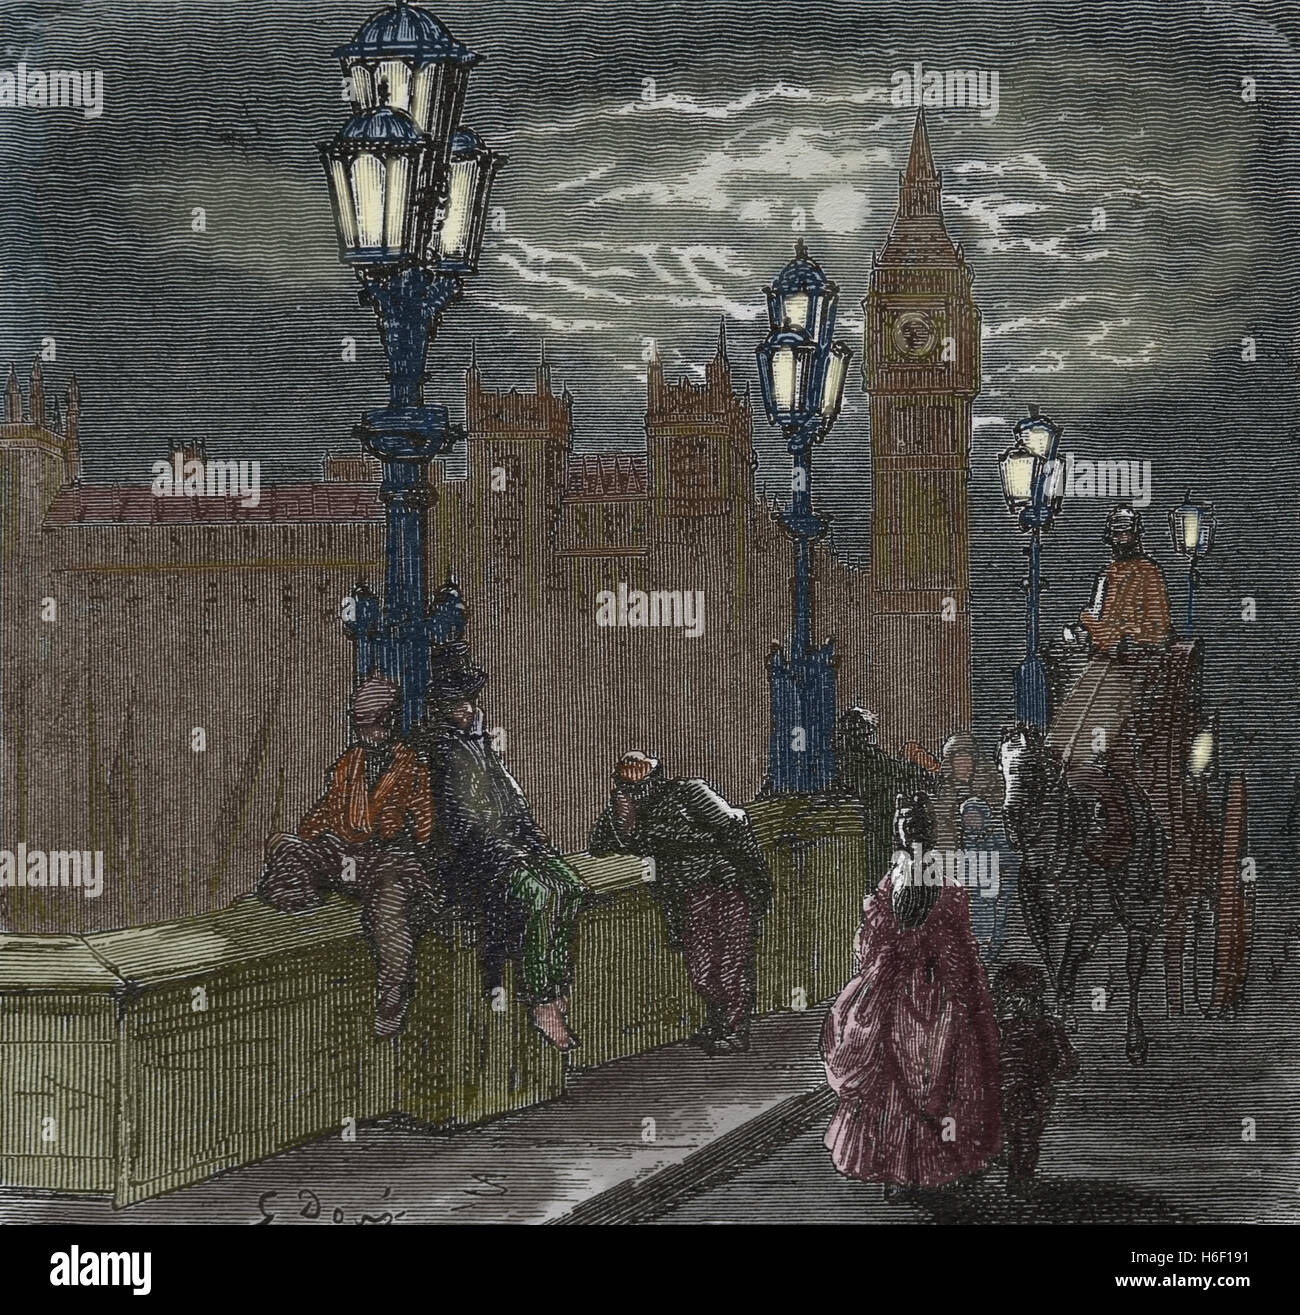 United Kingdom. Londres. Victorian Embankment. Gravure par Dore, xixe s. La couleur. Banque D'Images